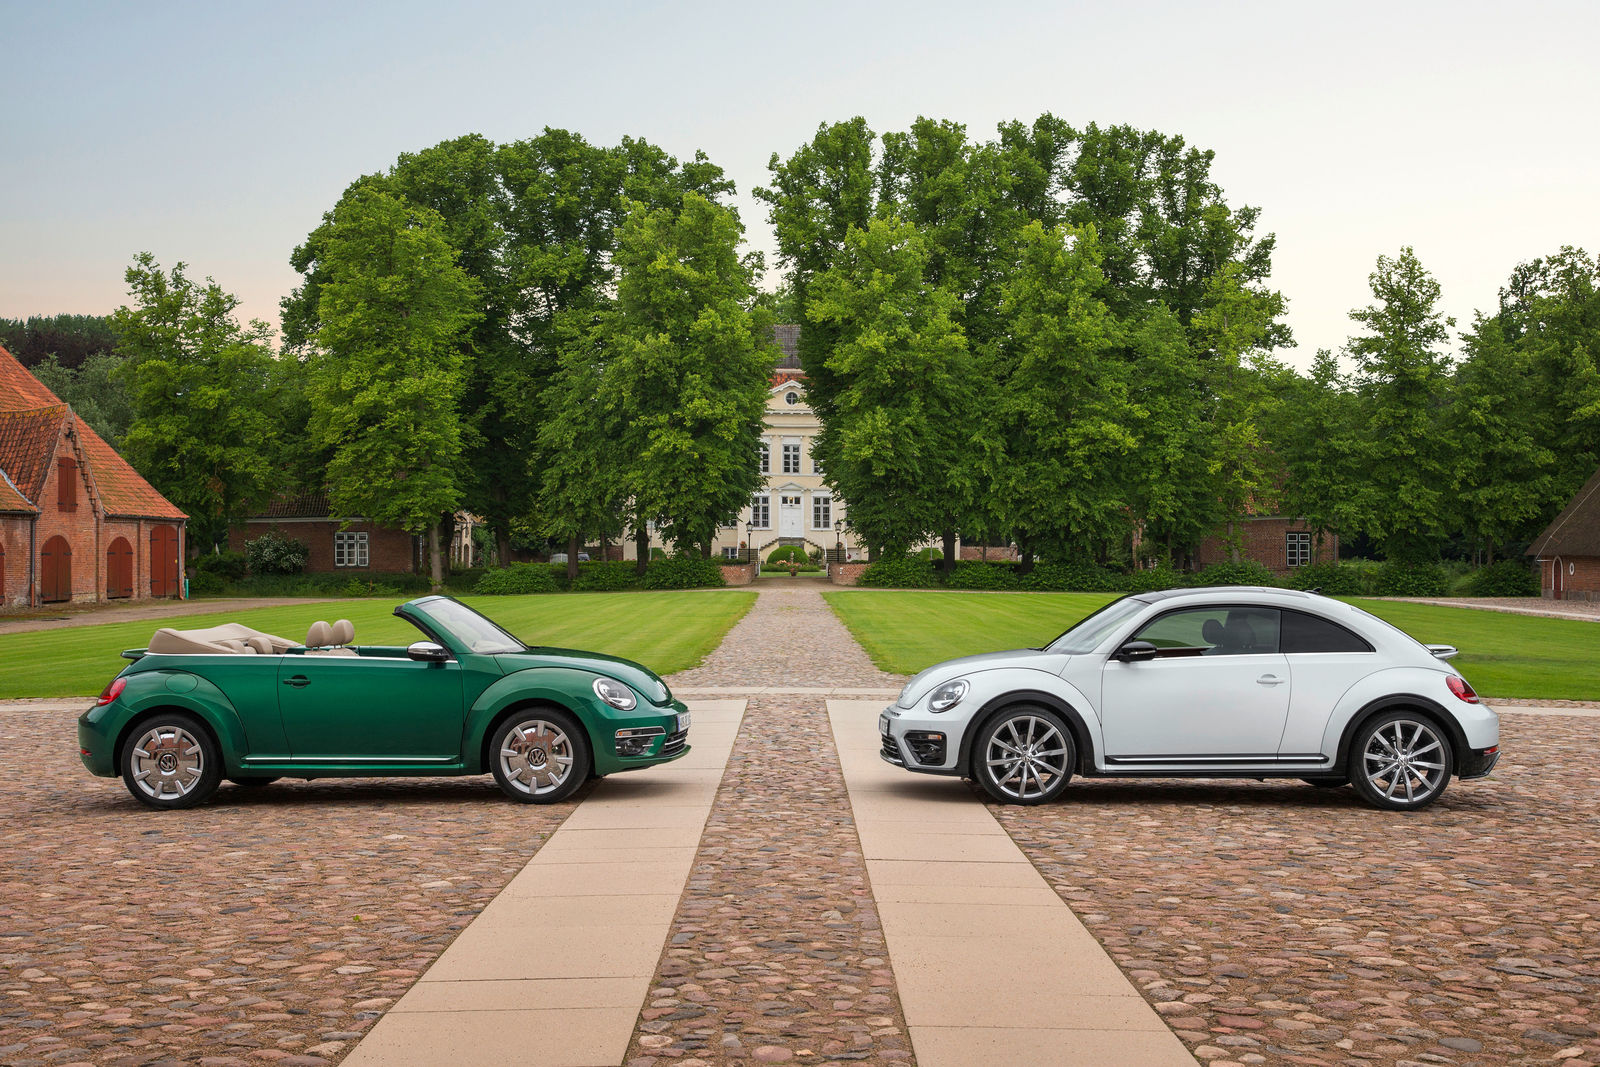 Volkswagen Beetle and Volkswagen Beetle Cabriolet – model year 2017